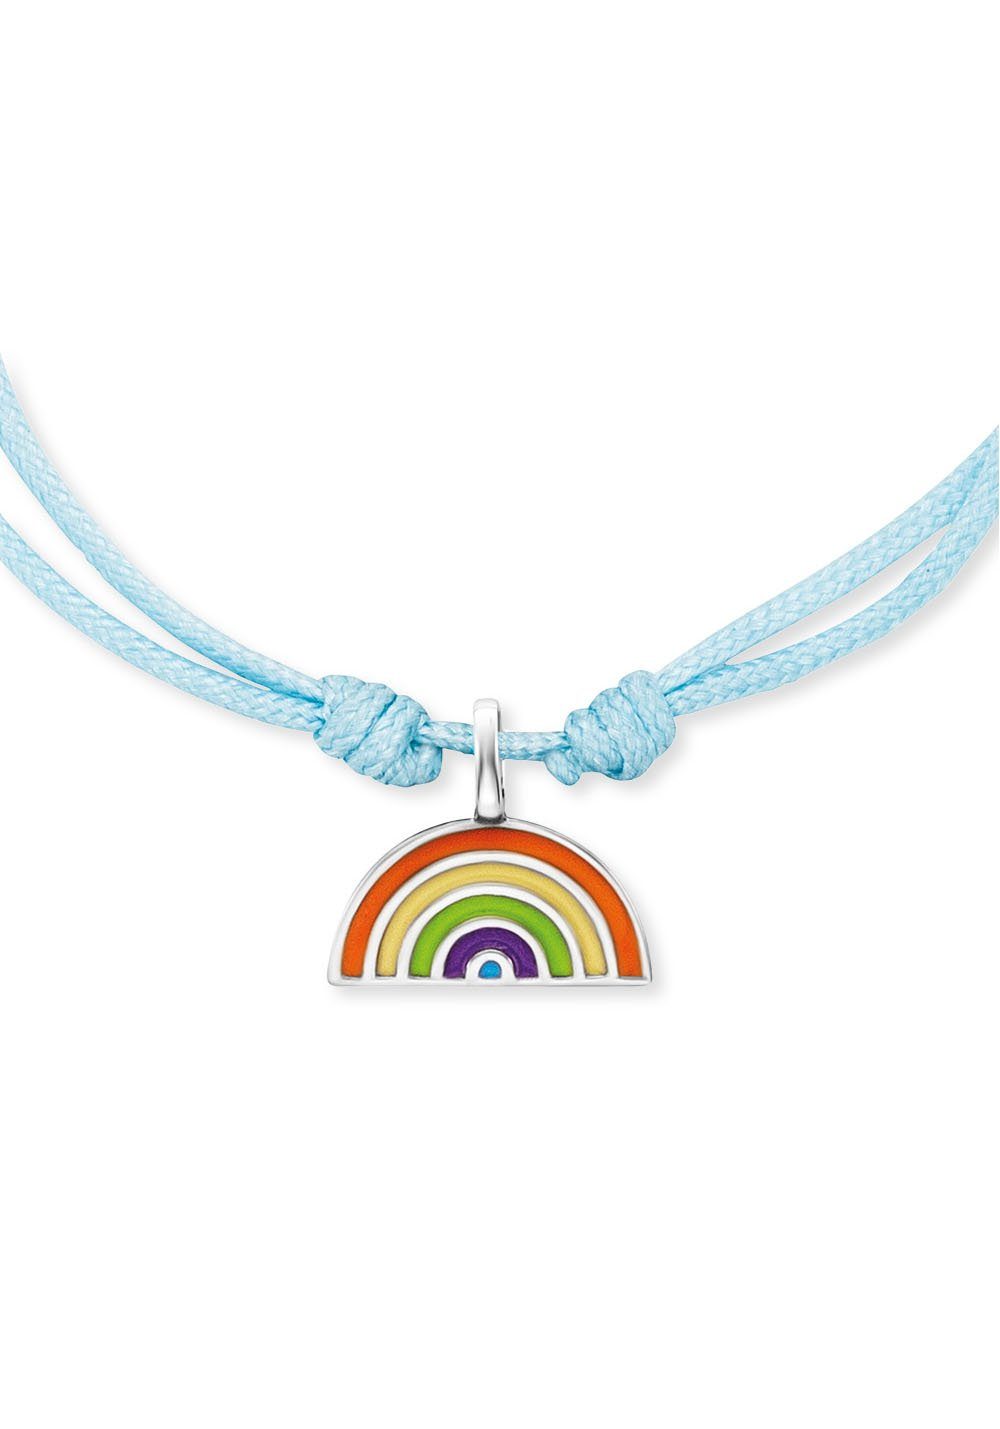 Regenbogen, HEB-RAINBOW, Emaille Herzengel mit Armband